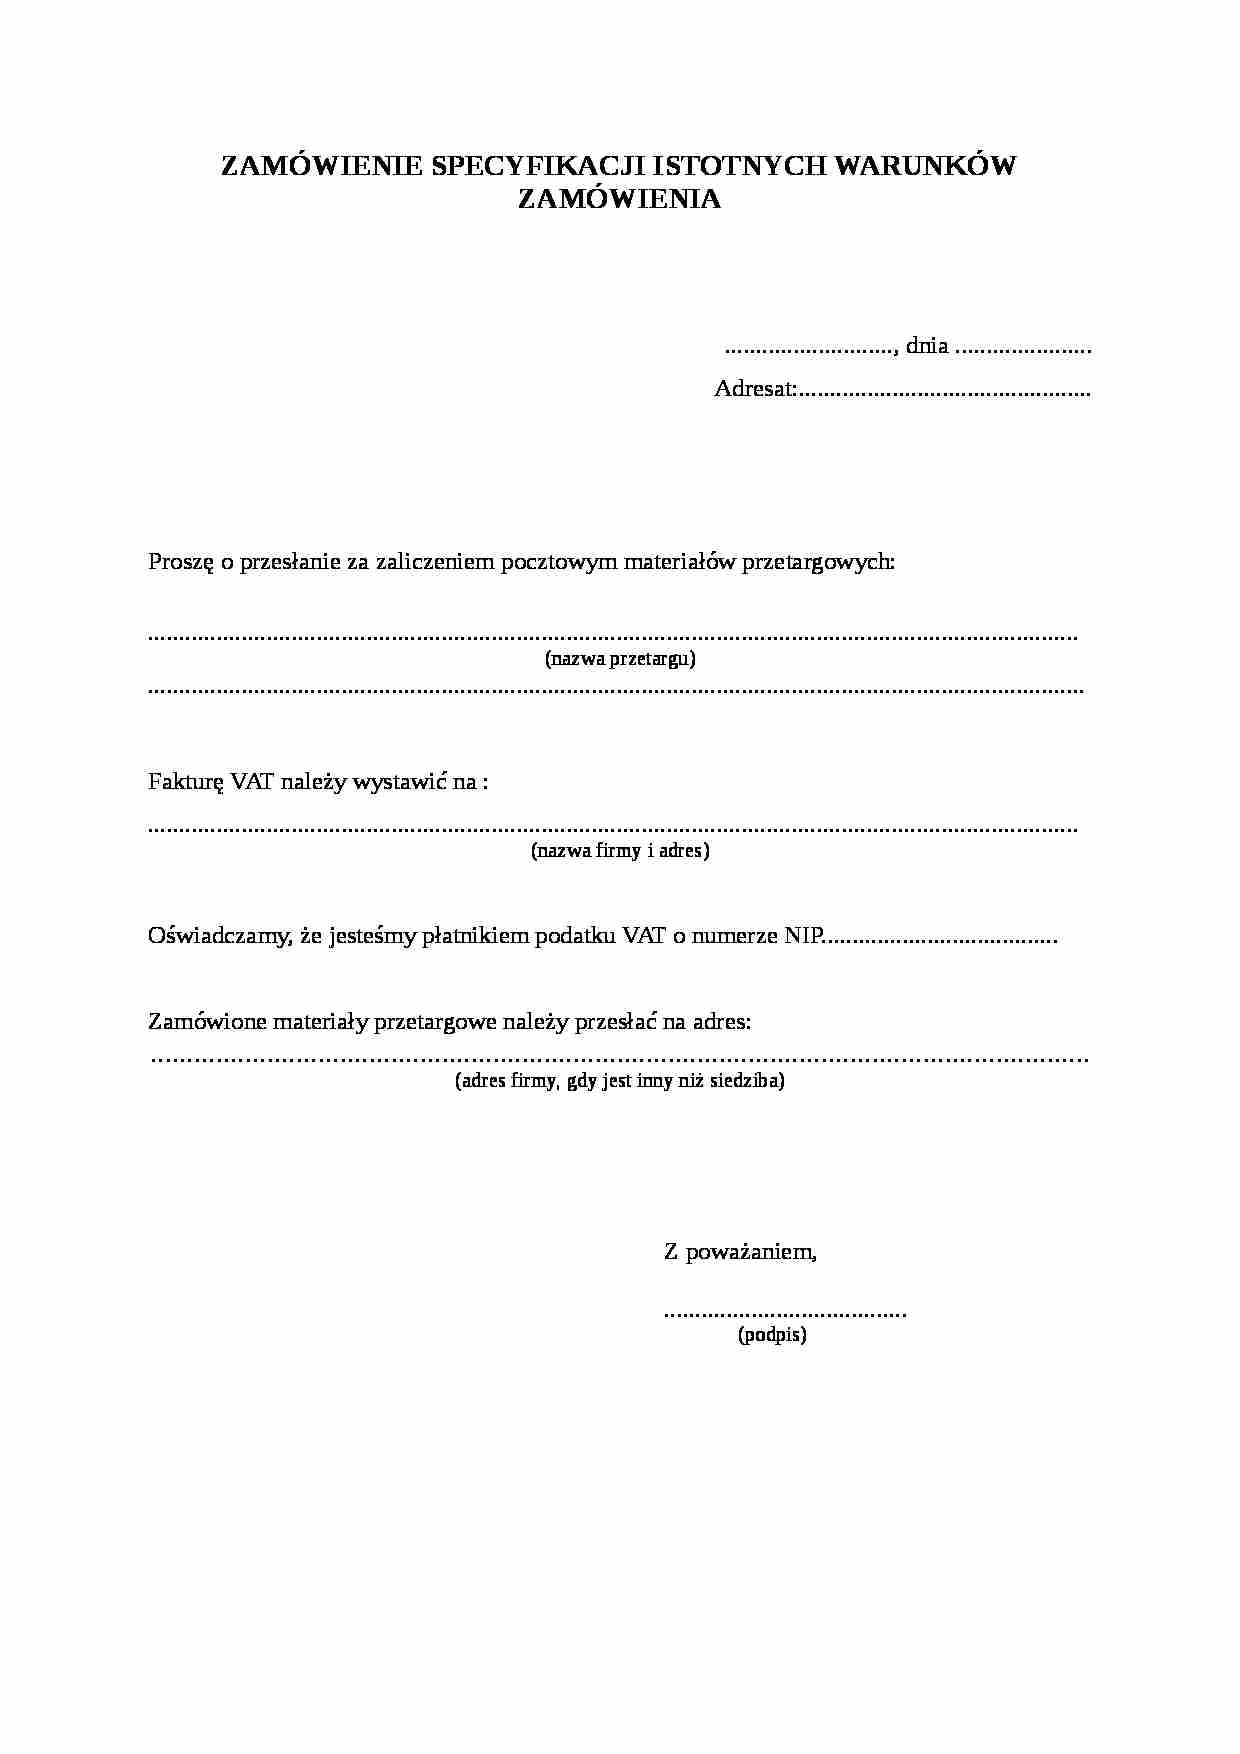 Wzór-Zamówienie specyfikacji istotnych warunków - strona 1